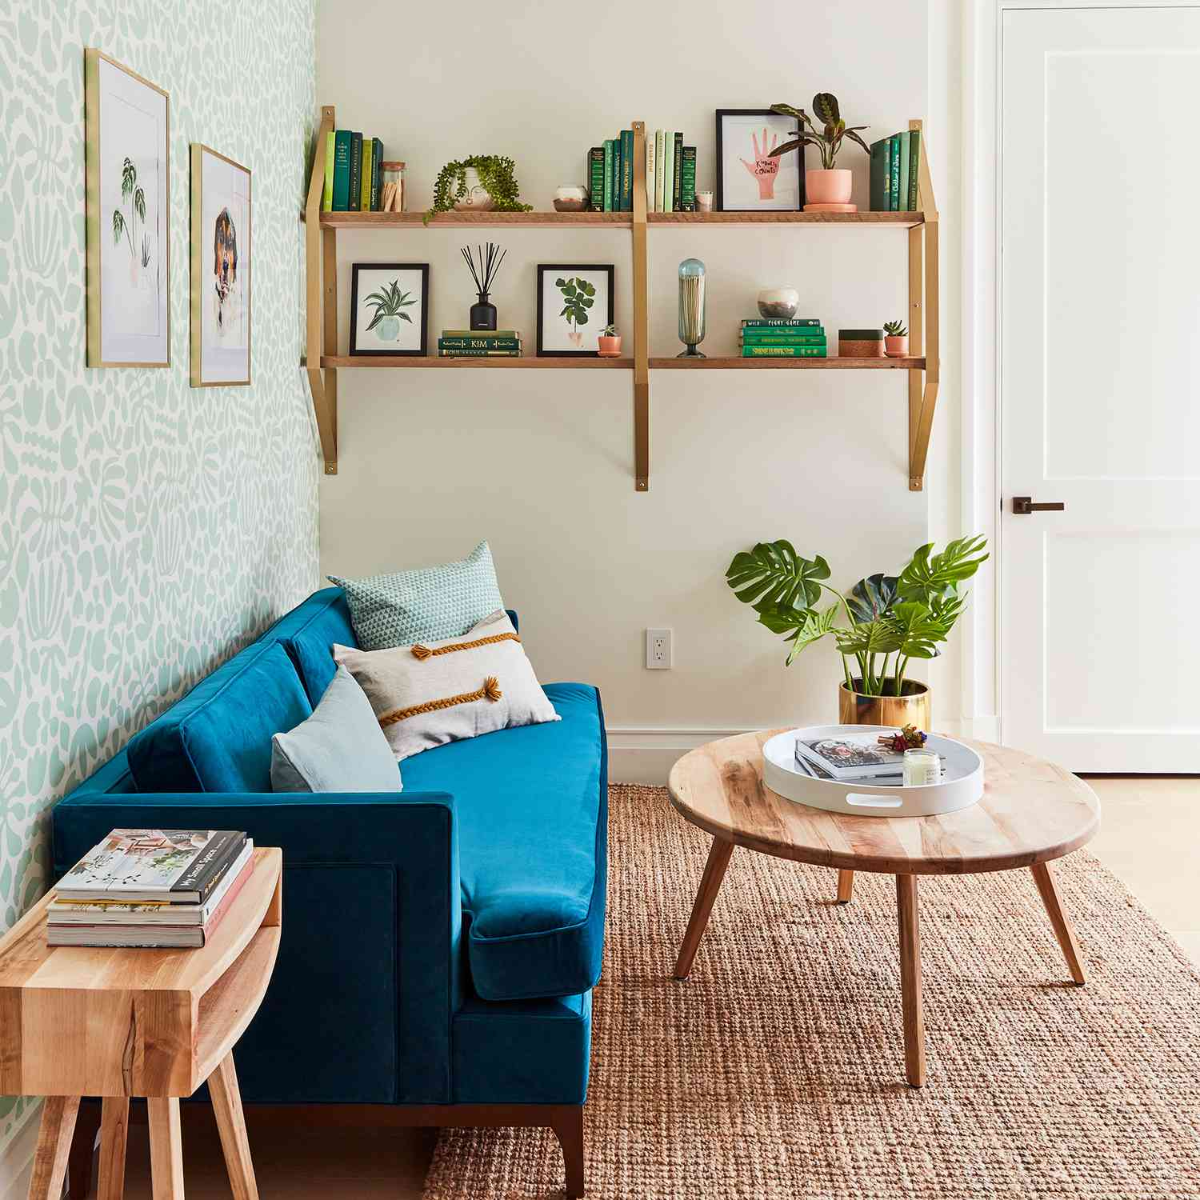 mietwohnung mit blauer couch, dekoriert mit büchern, bildern und blumen